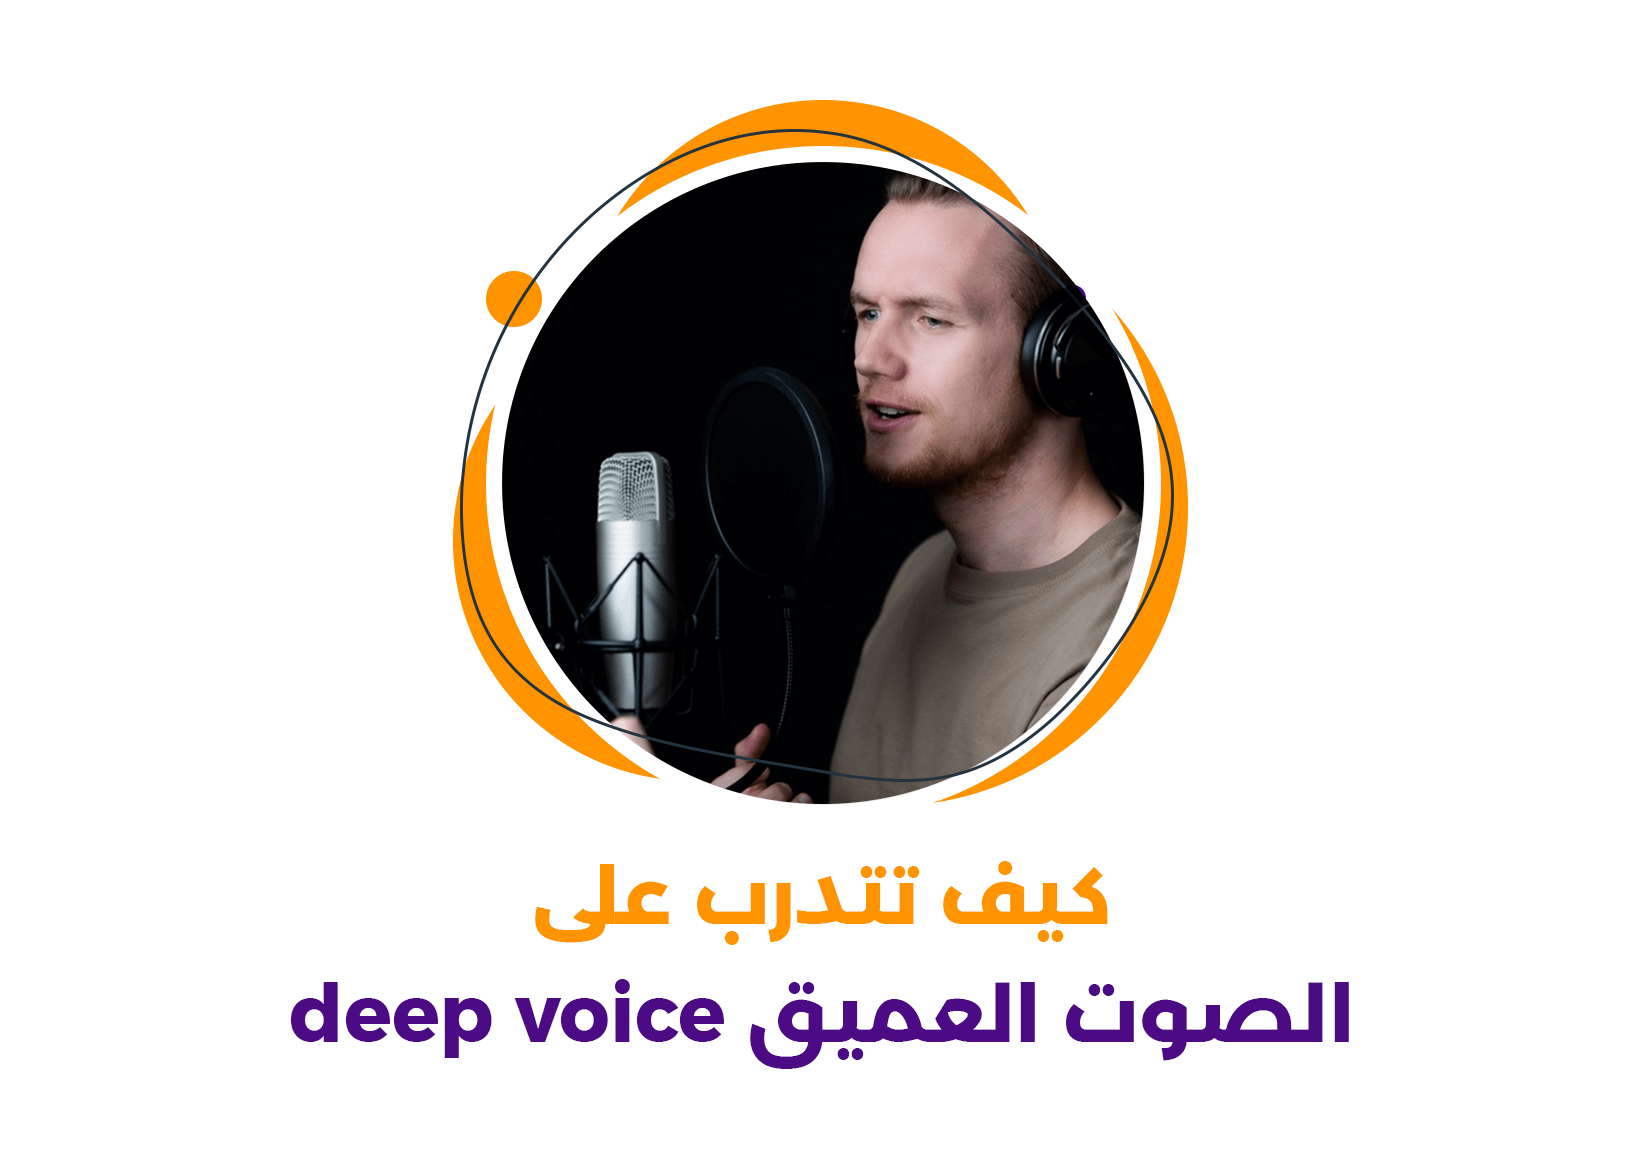 كيف تتدرب على الصوت العميق Deep Voice